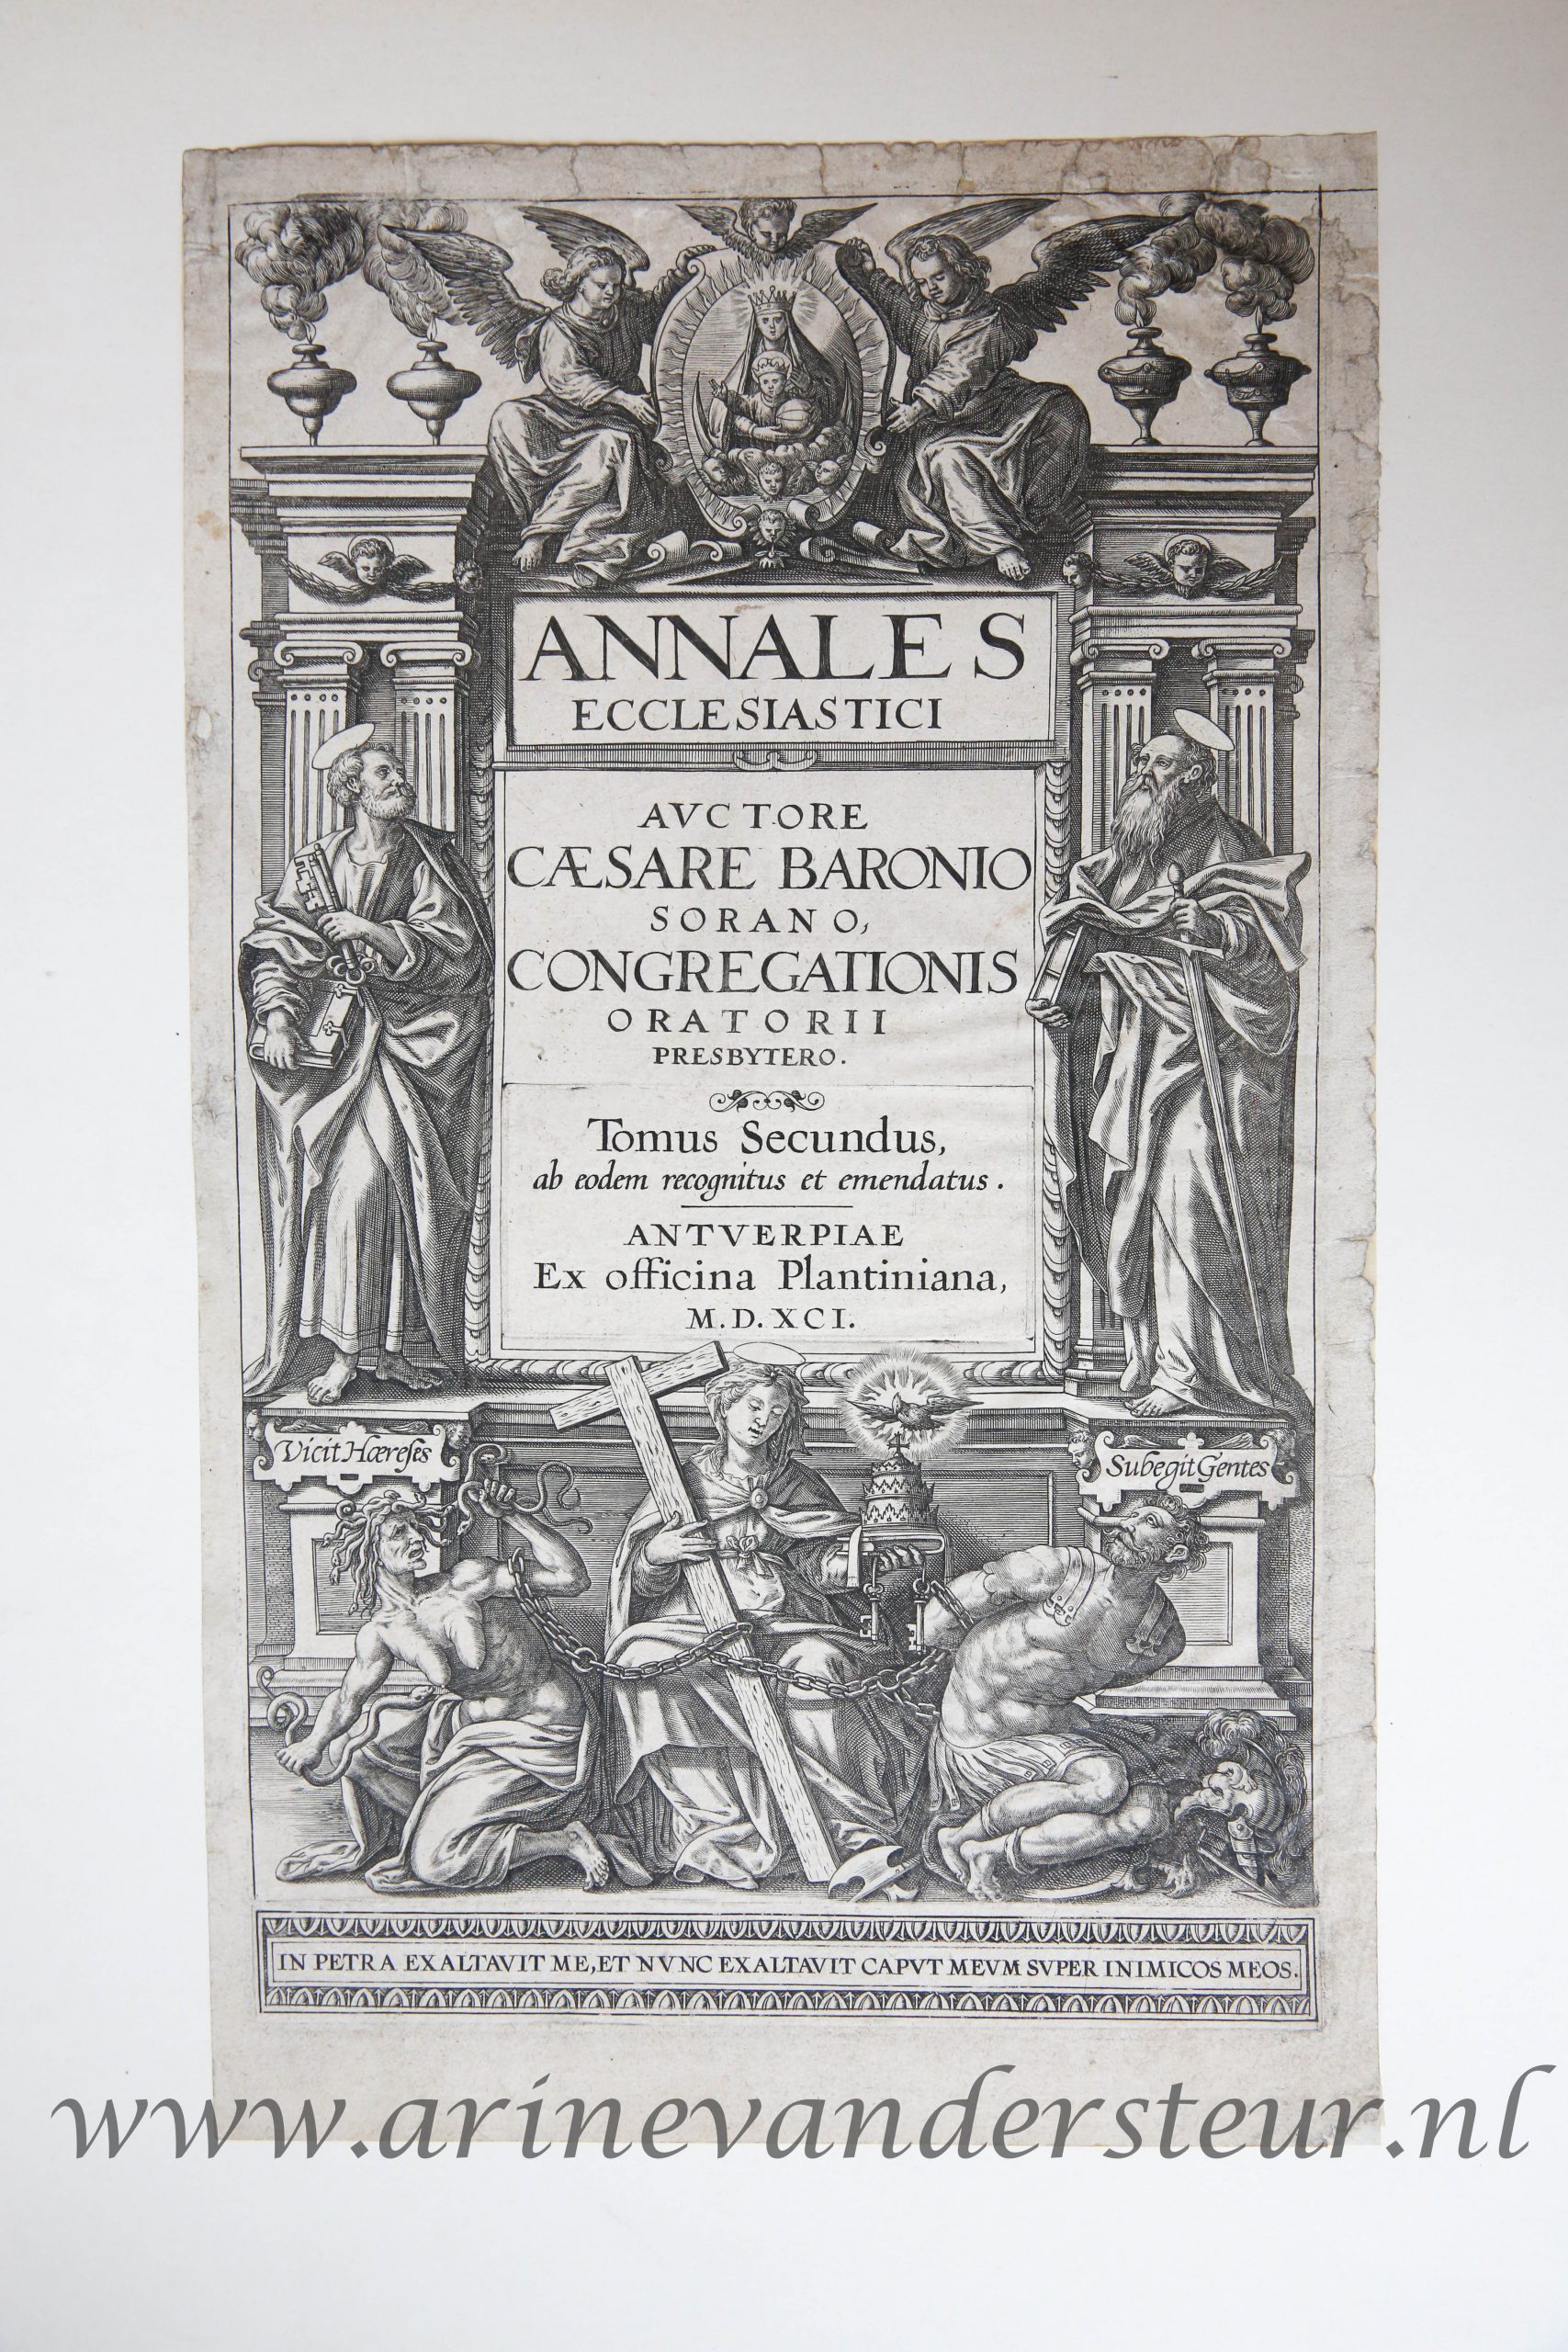 [Antique title page, 1591] ANNALES ECCLESIASTICI, published 1591, 1 p.